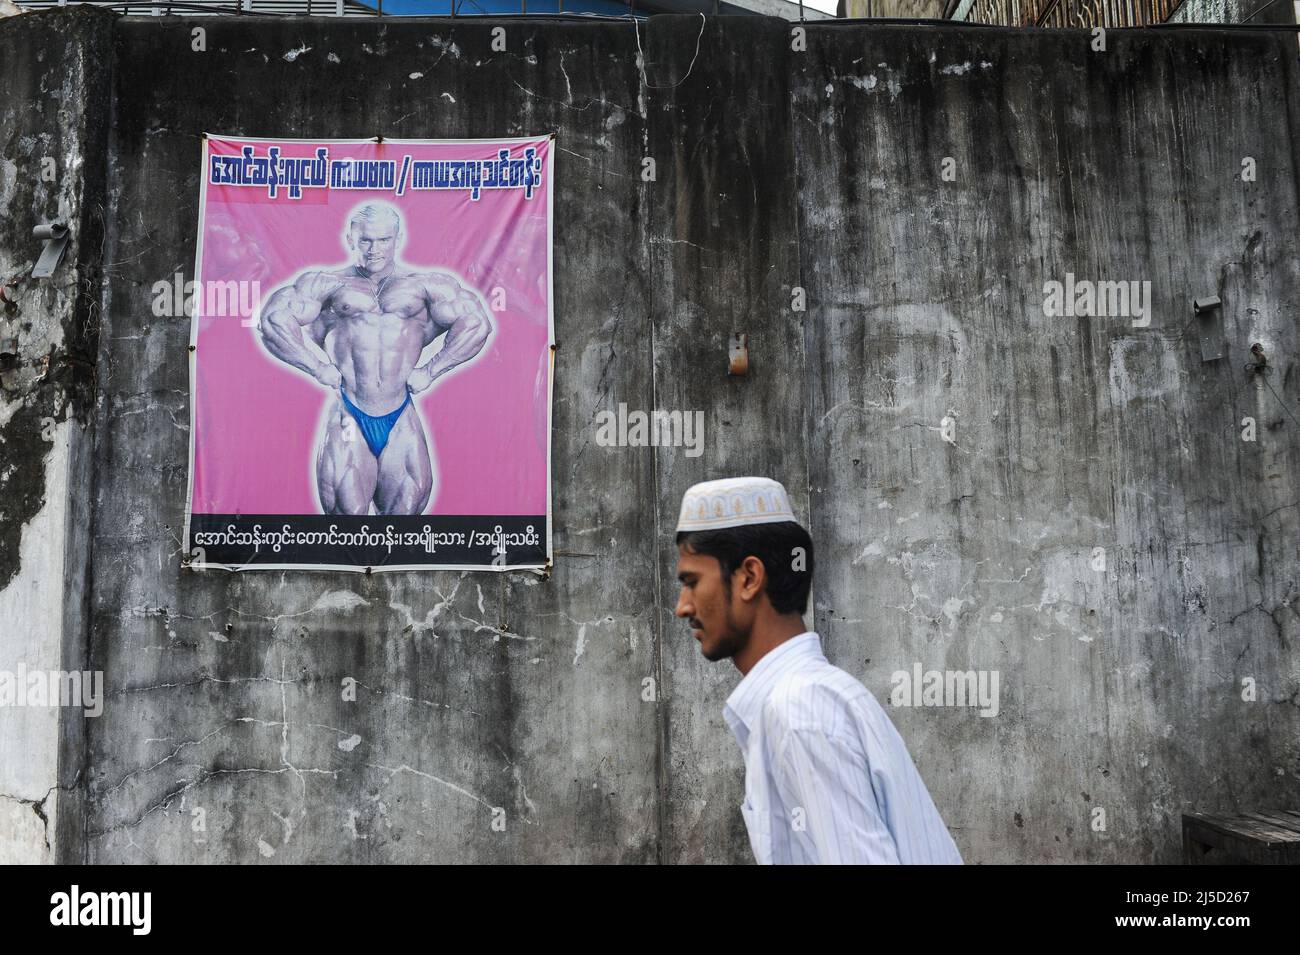 11.10.2013, Yangon, Myanmar, Asien - Ein muslimischer Mann in einem traditionellen takke-stil geht an einer Wand vorbei und zeigt ein Plakat, auf dem ein Bodybuilding-Ereignis angezeigt wird. [Automatisierte Übersetzung] Stockfoto